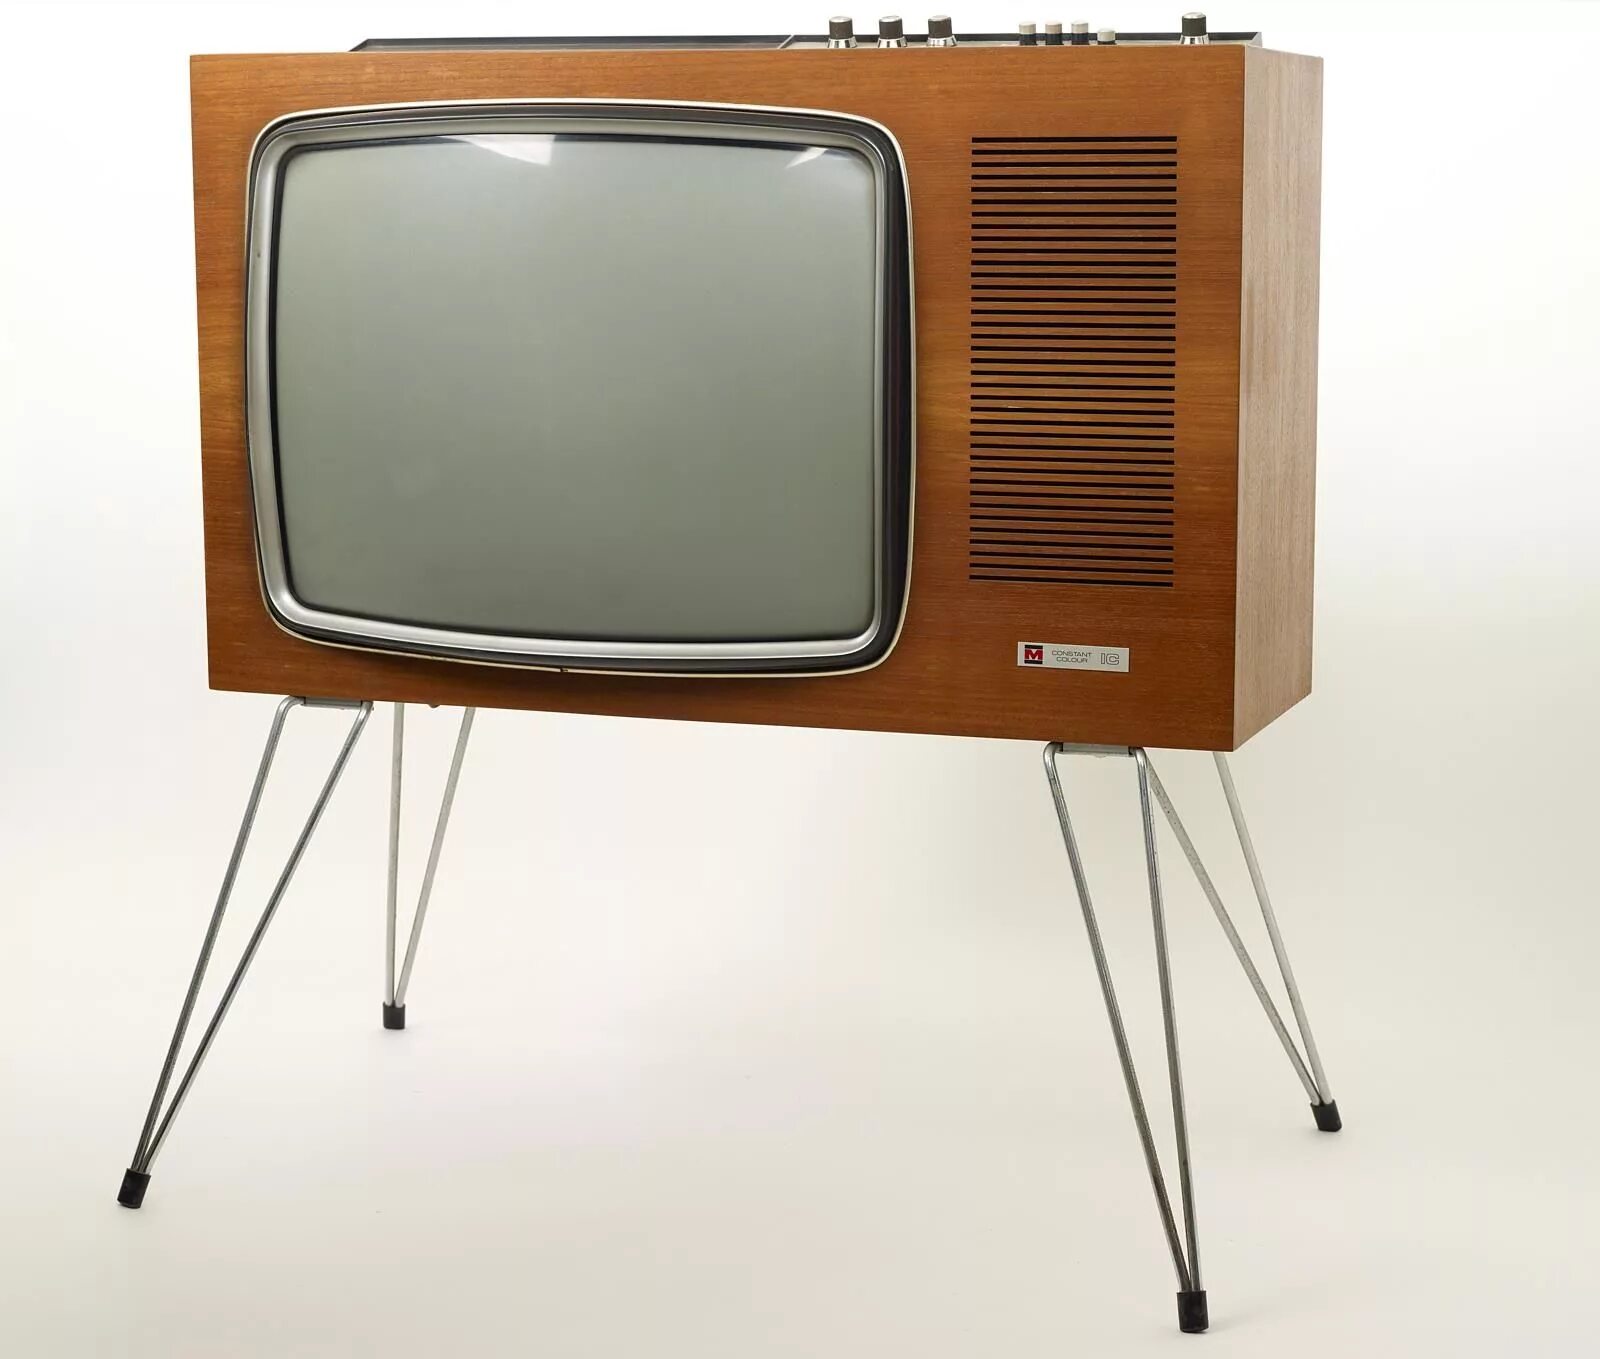 Телевизор через 30. Телевизор National Vintage 1970. Dex 1970 телевизор. Телевизоры 60-х.